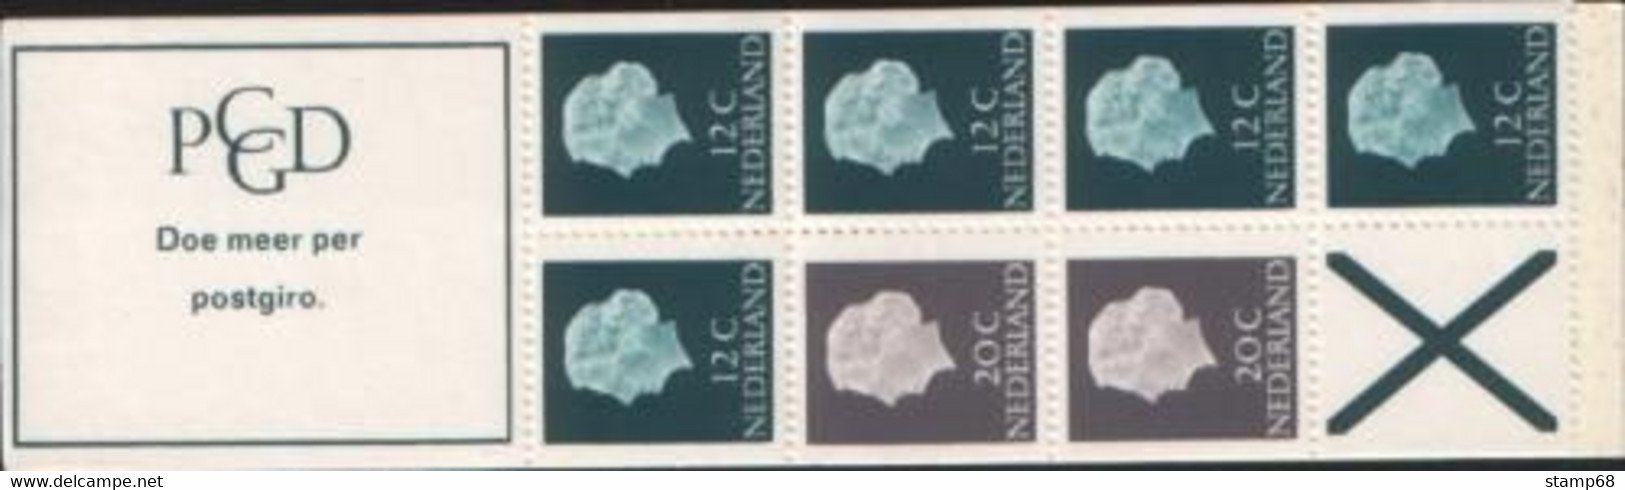 Nederland NVPH PB7bF Postzegelboekje 1968 MNH Postfris - Postzegelboekjes En Roltandingzegels